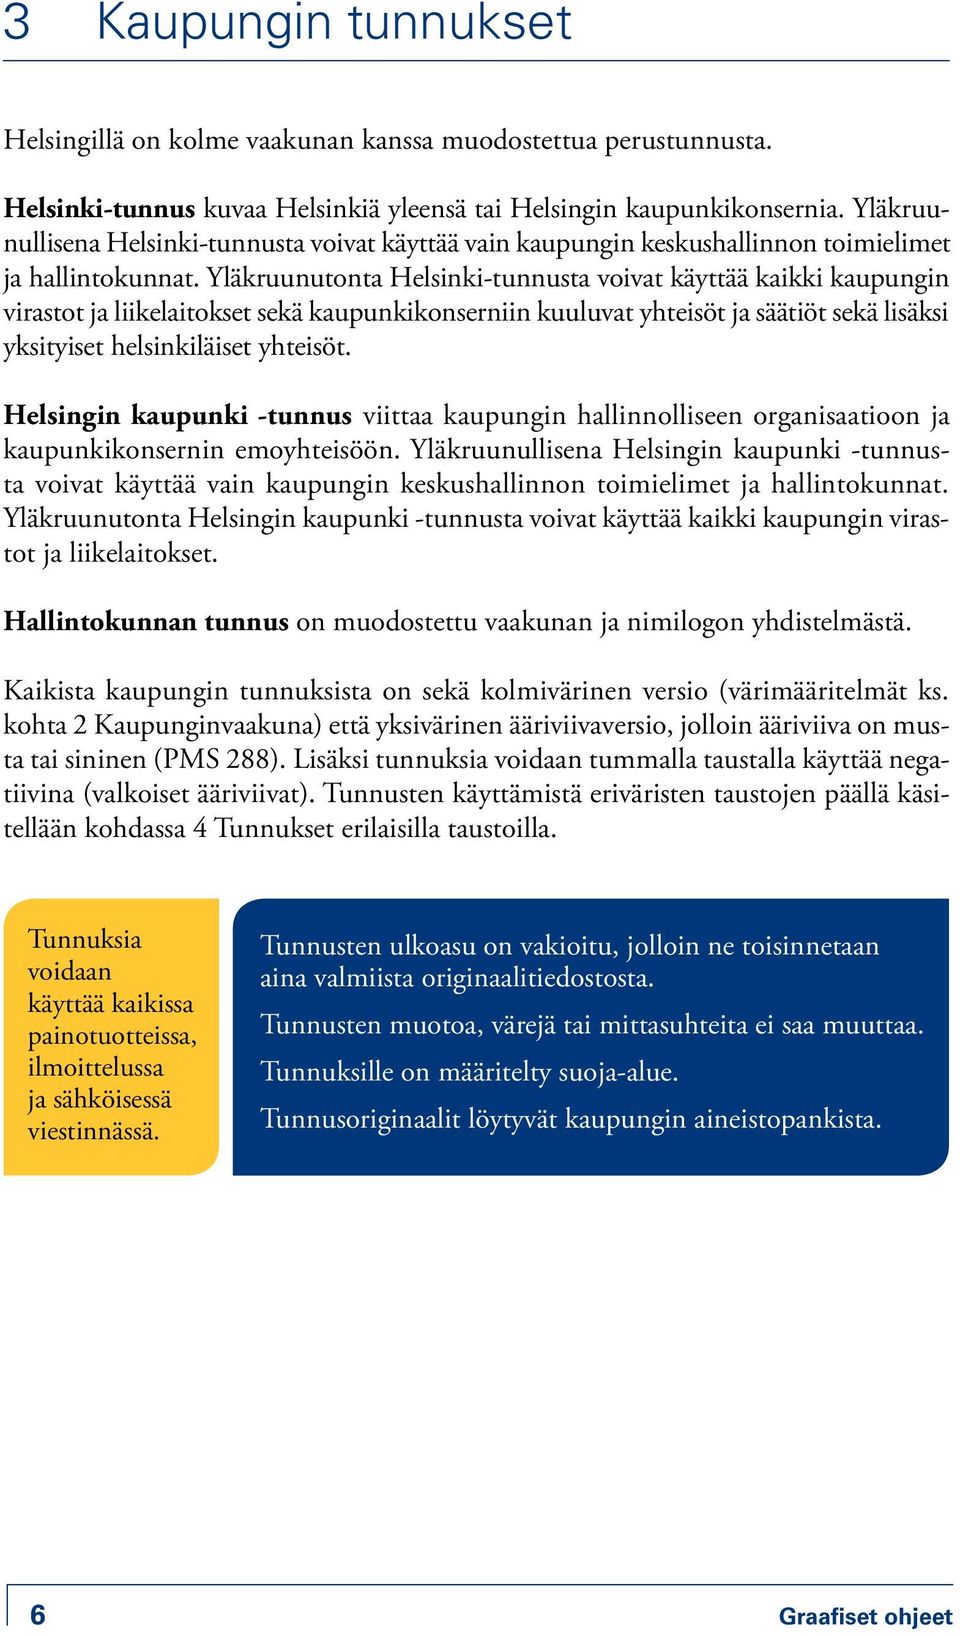 Yläkruunutonta Helsinki-tunnusta voivat käyttää kaikki kaupungin virastot ja liikelaitokset sekä kaupunkikonserniin kuuluvat yhteisöt ja säätiöt sekä lisäksi yksityiset helsinkiläiset yhteisöt.